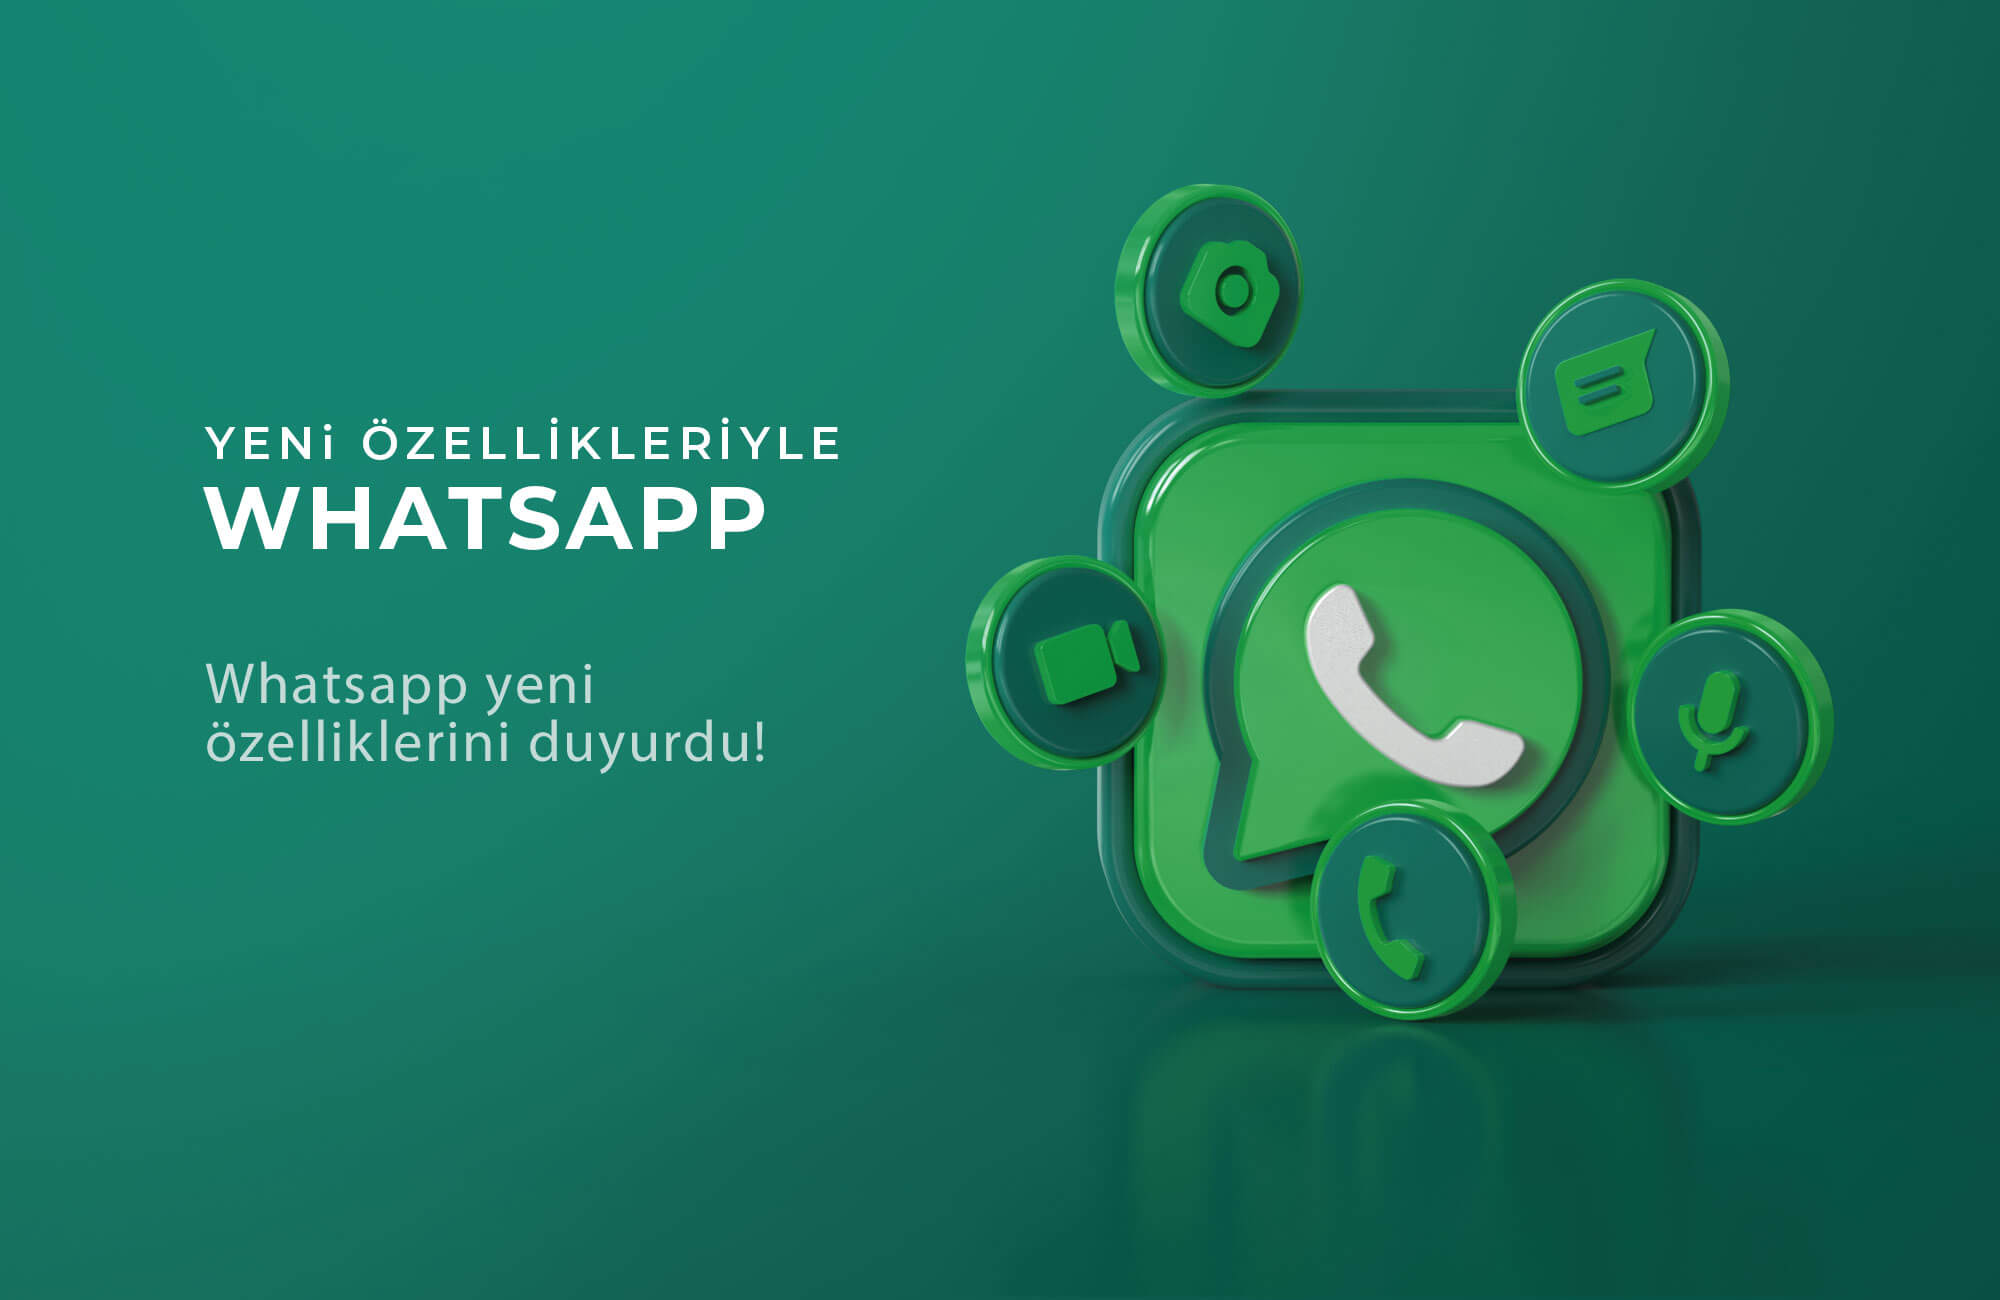 Whatsapp yeni özelliklerini duyurdu